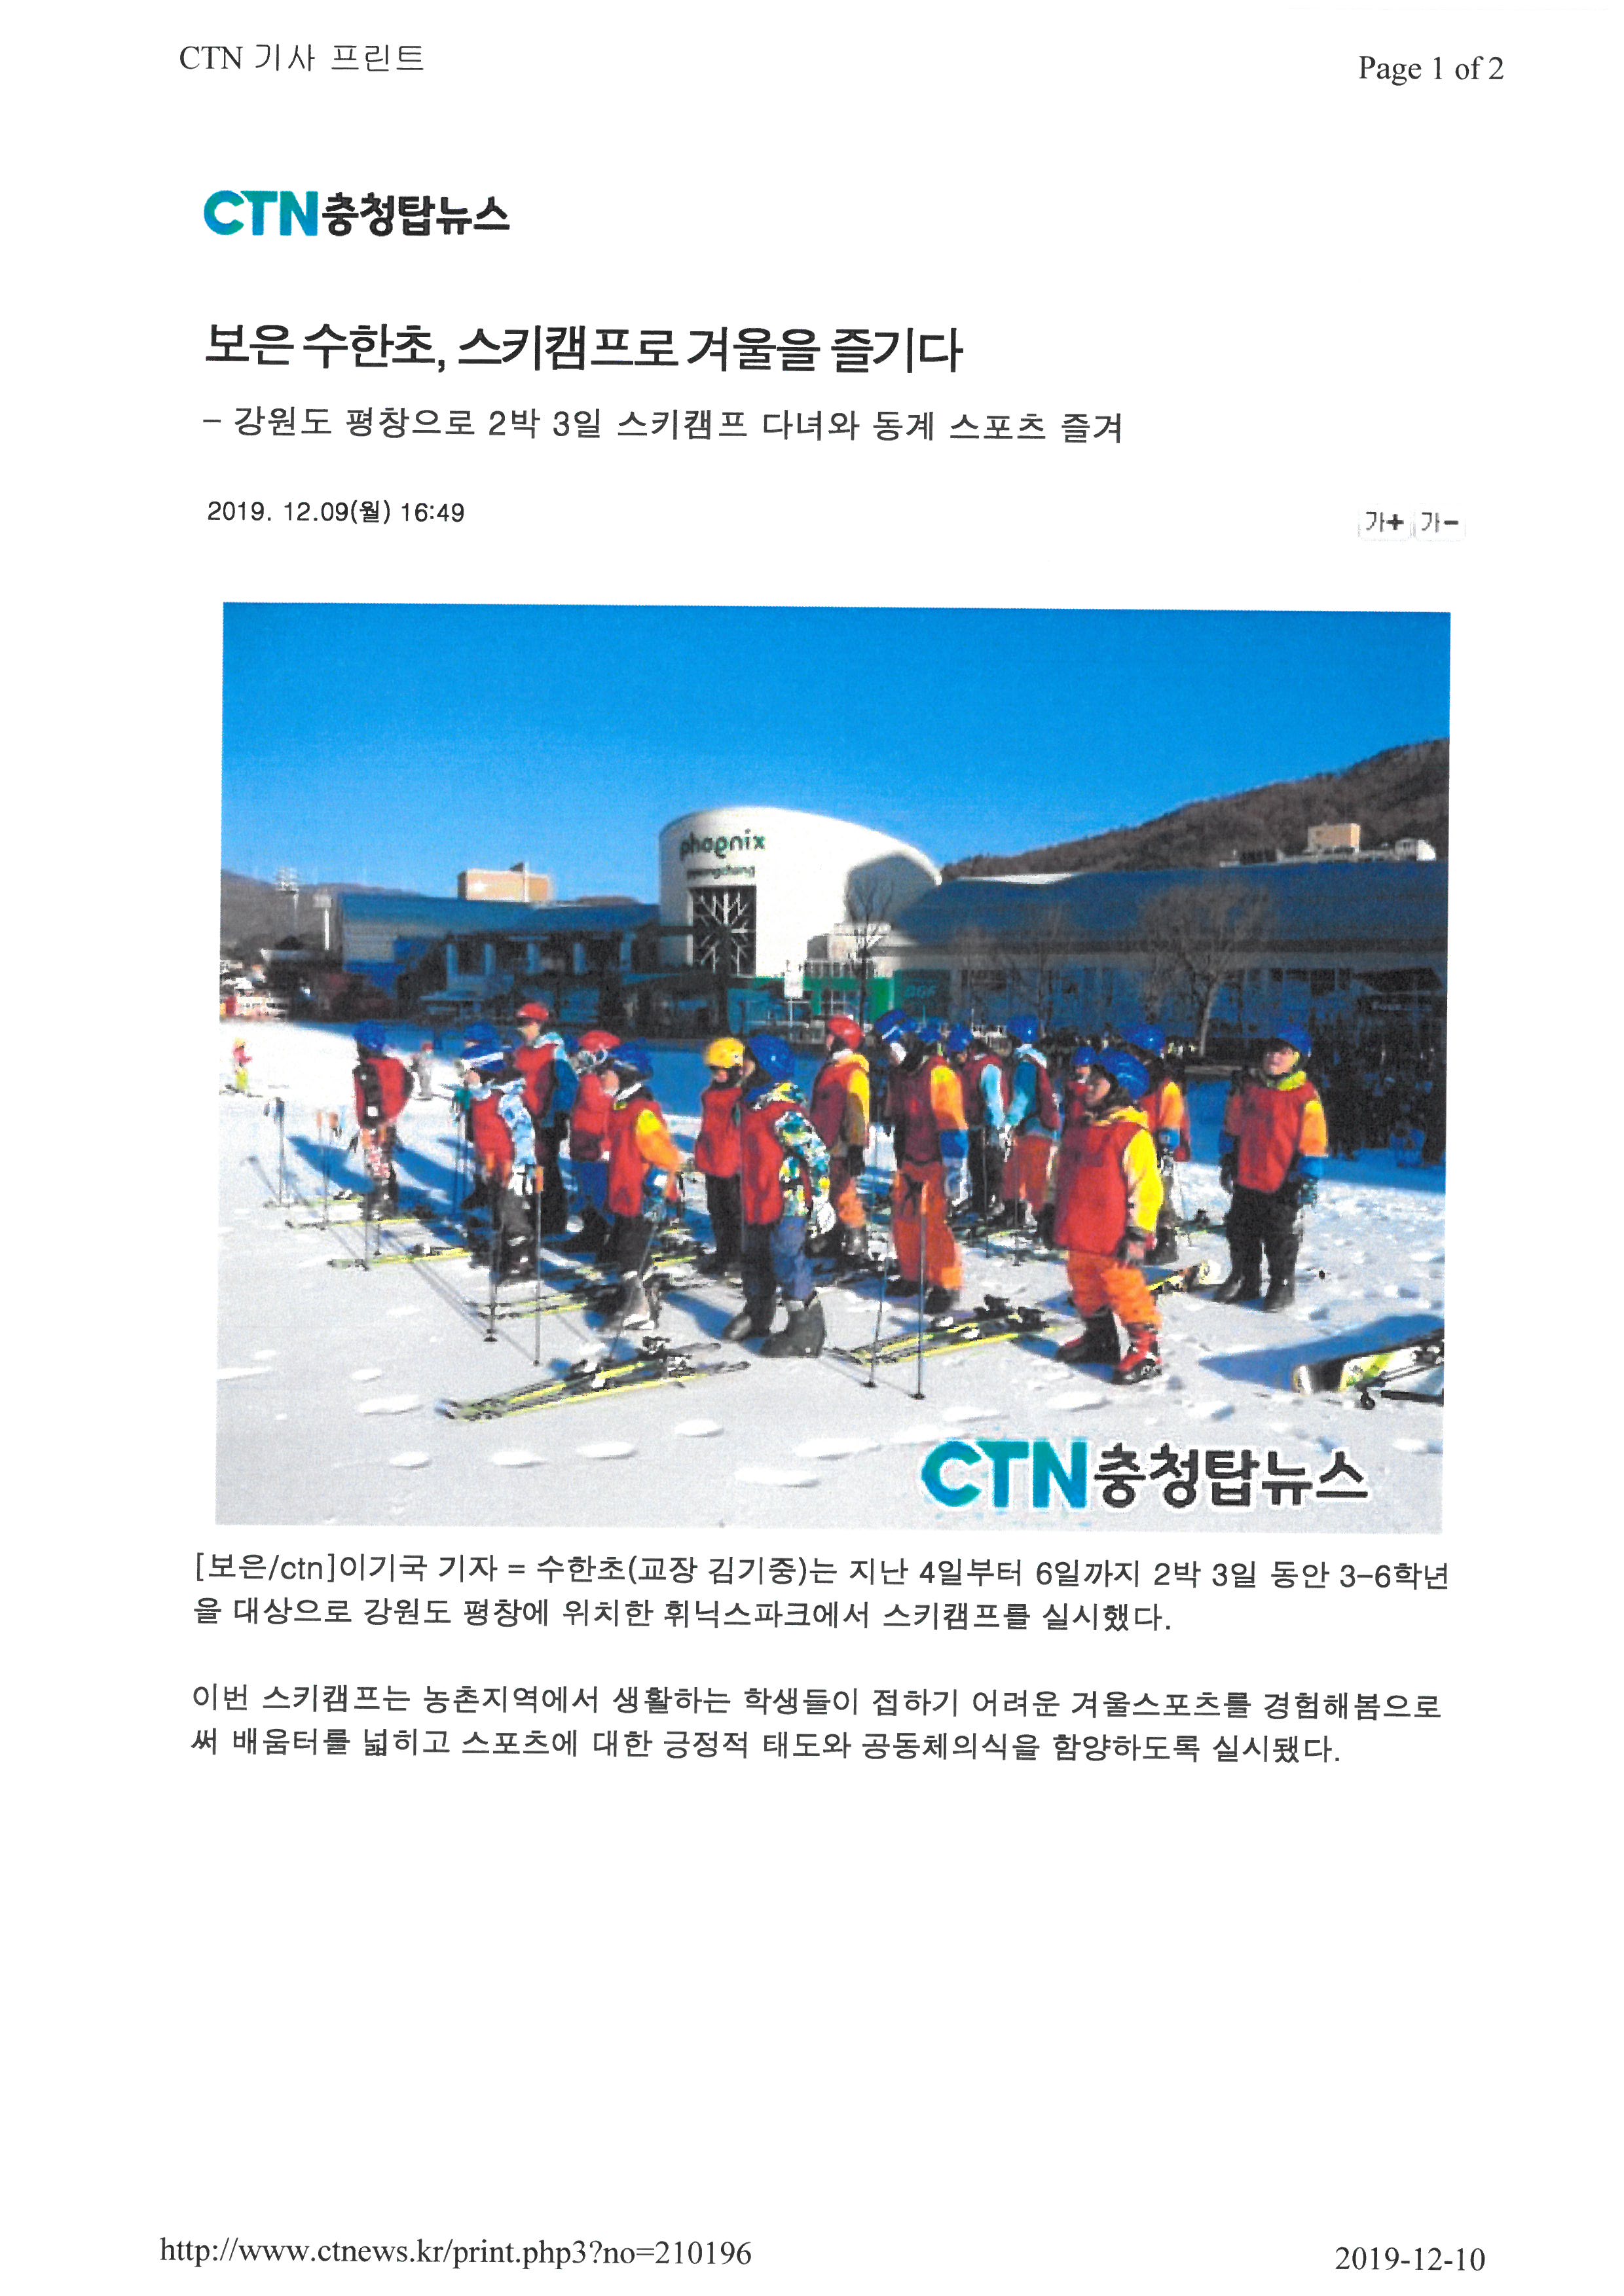 충청탑뉴스-스키캠프 (1)